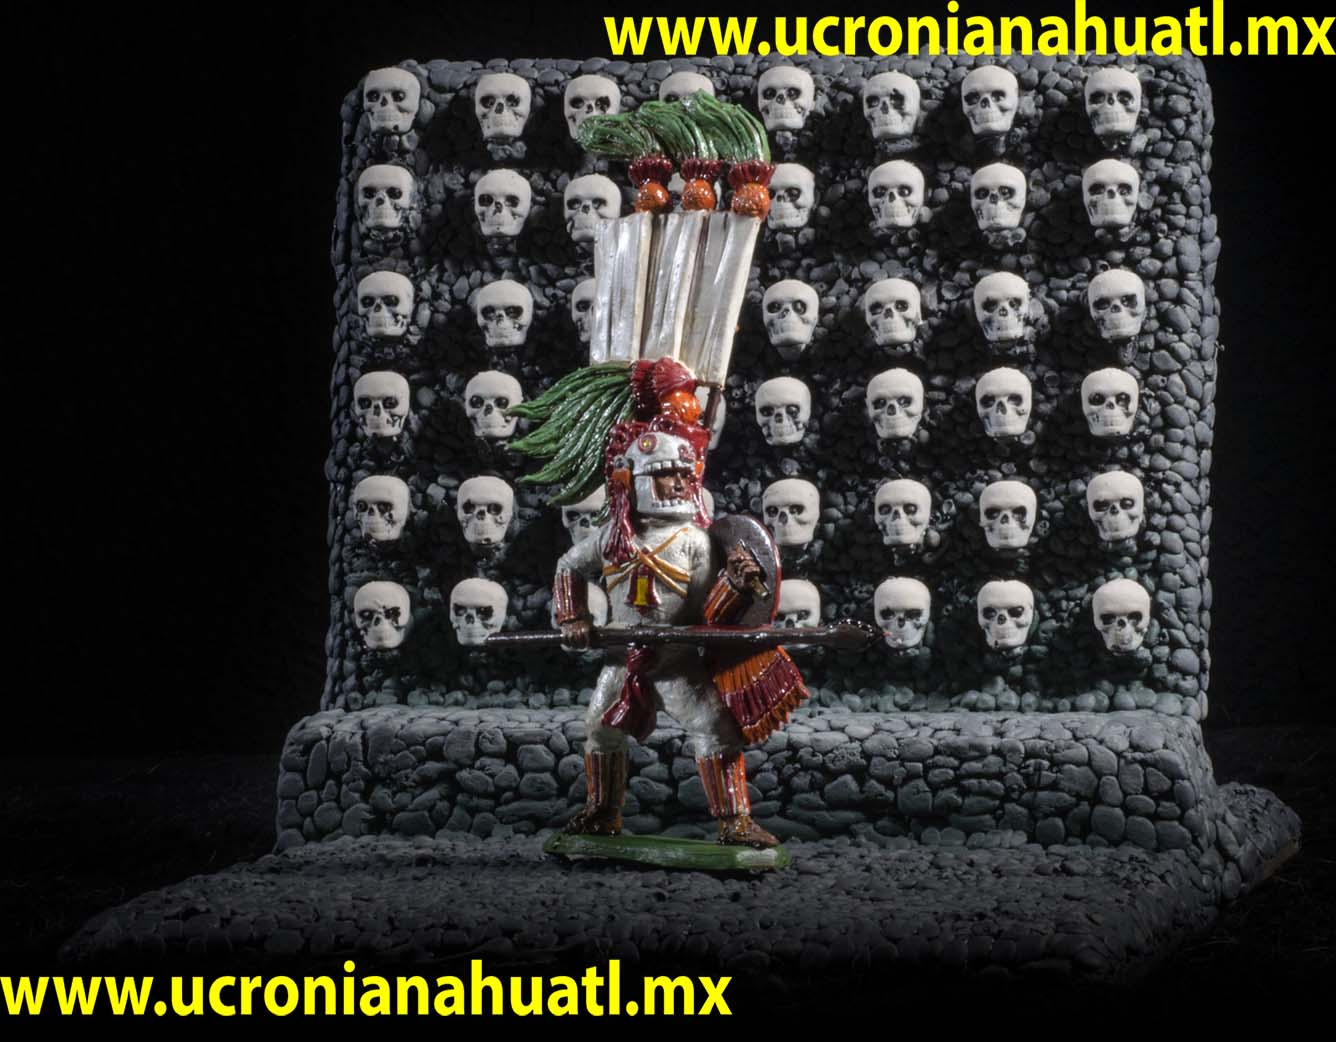 Miniaturas historicas escala 1/32, aztecas, mayas, mixtecas & zapotecas y españoles